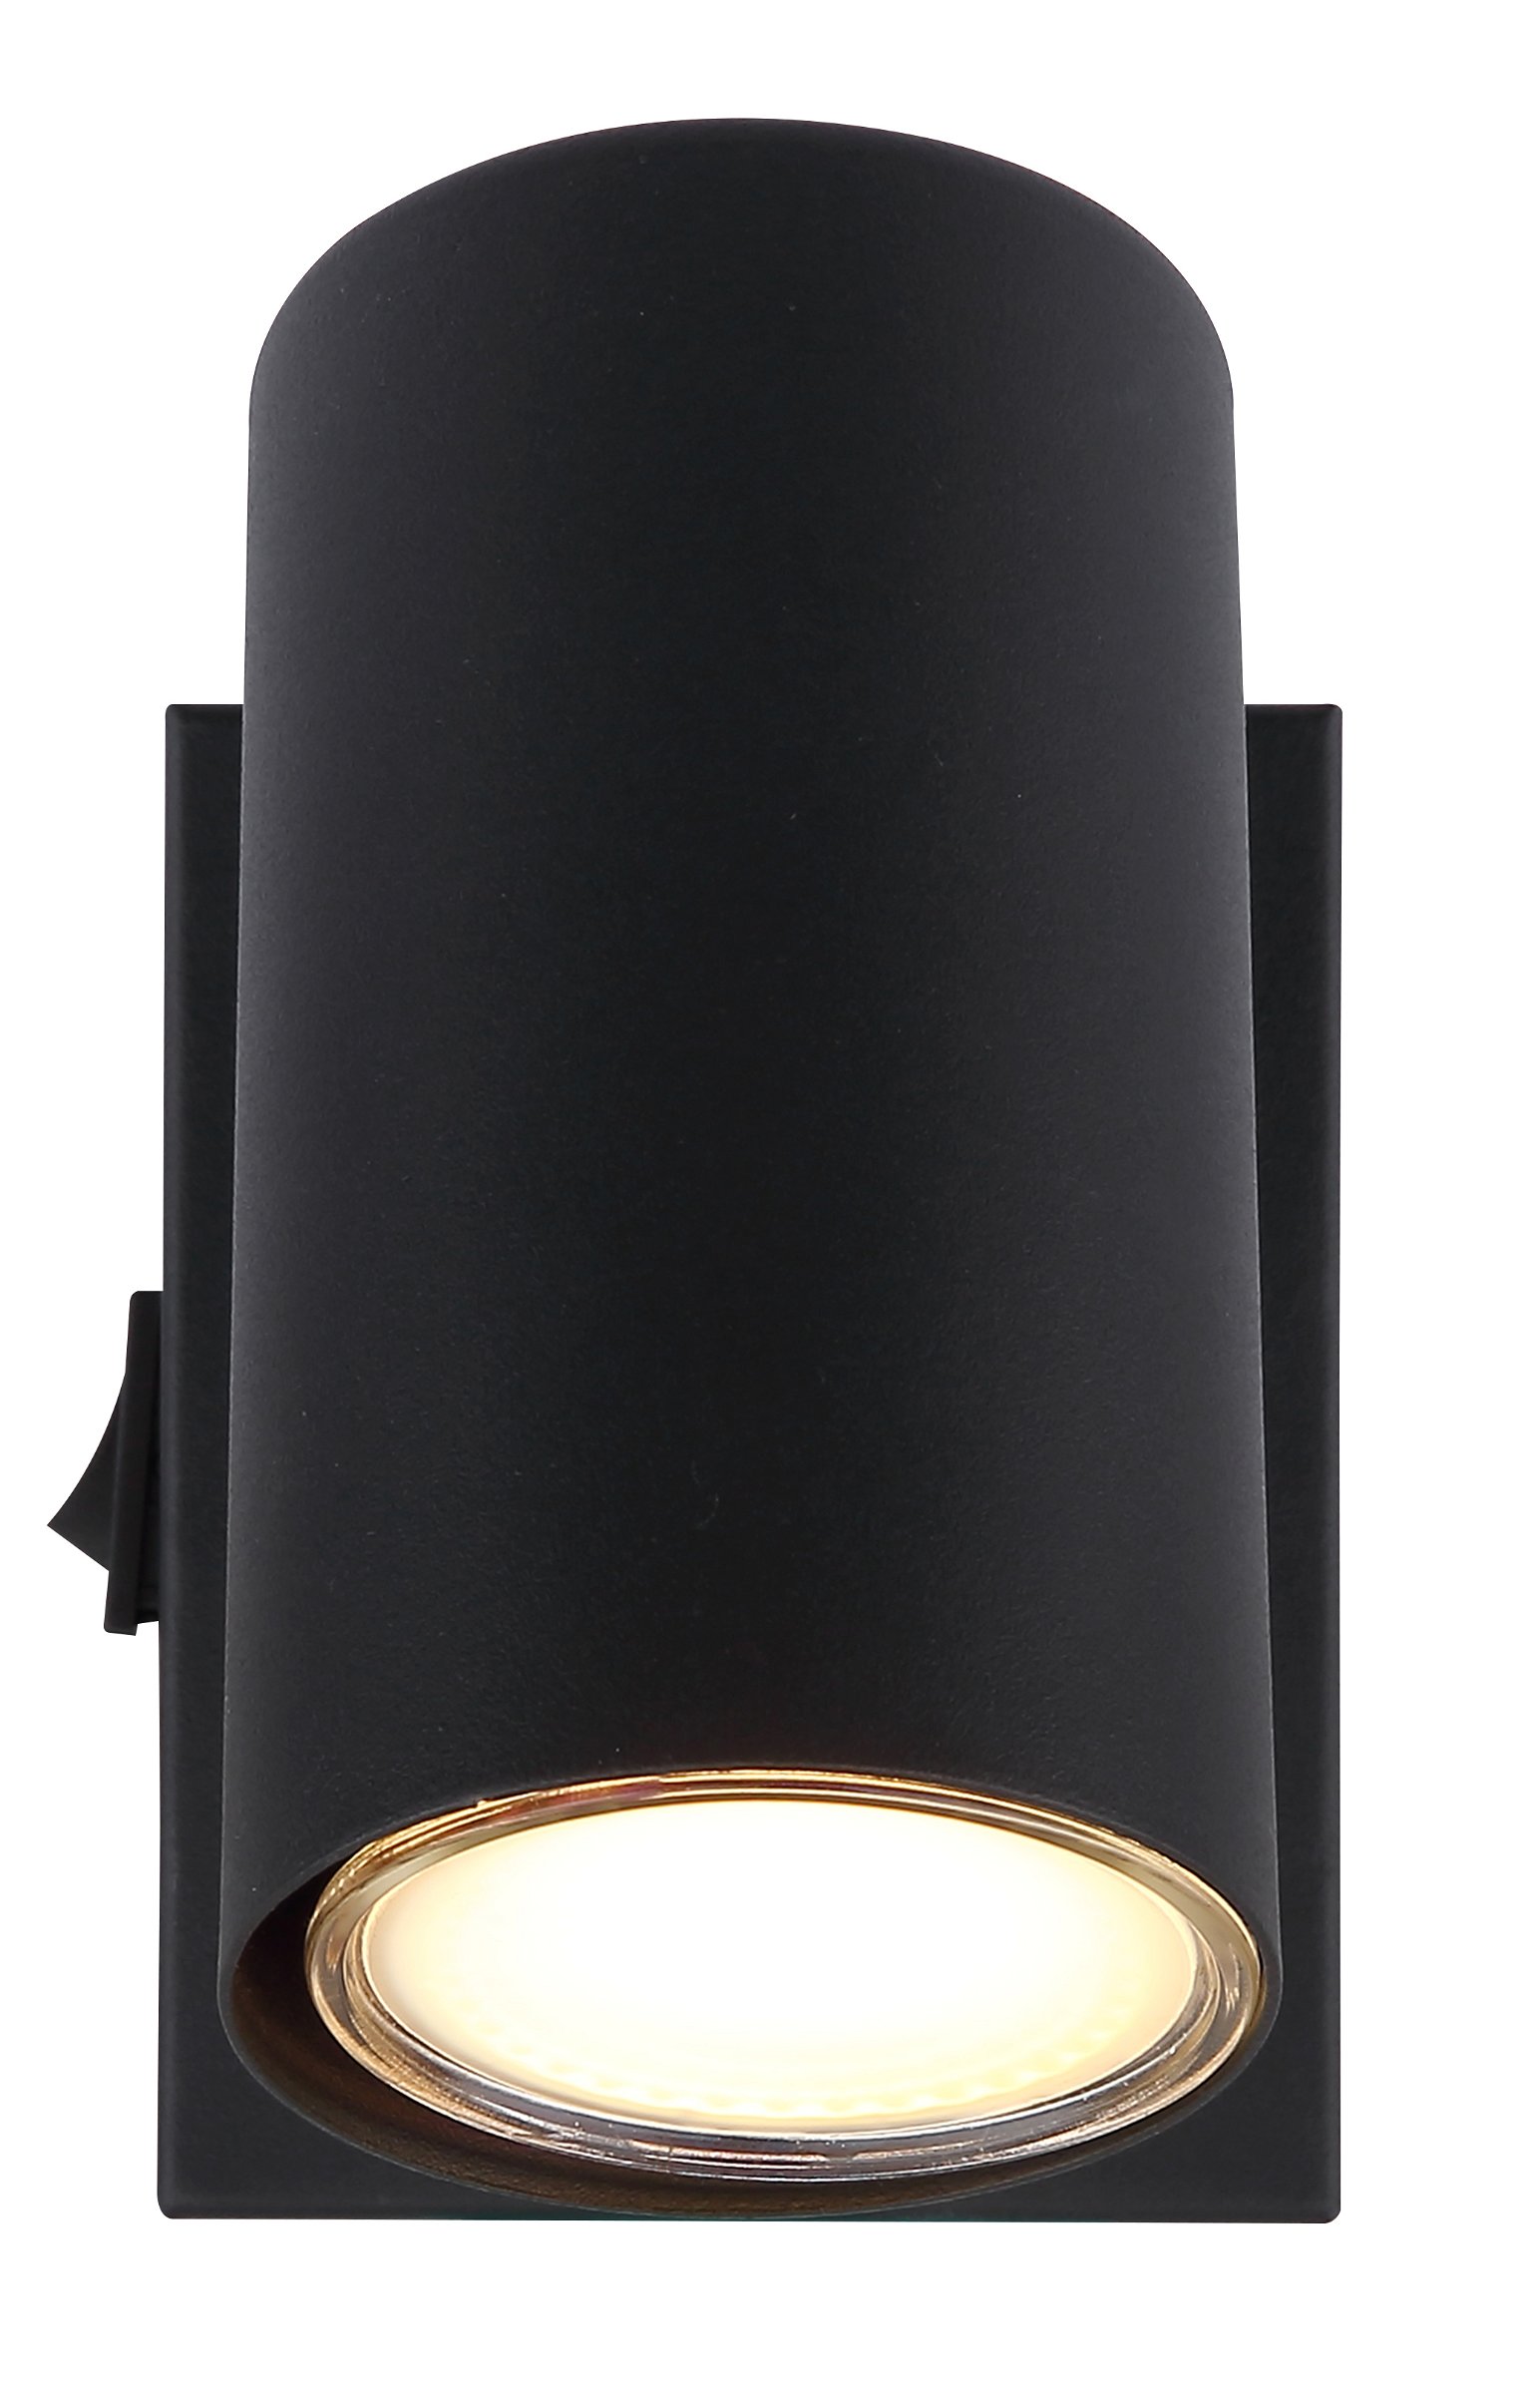 Taškinis šviestuvas GLOBO Robby, 1 x GU10, 25W, matinės juodos sp., 7 x 10 x 12 cm - 3